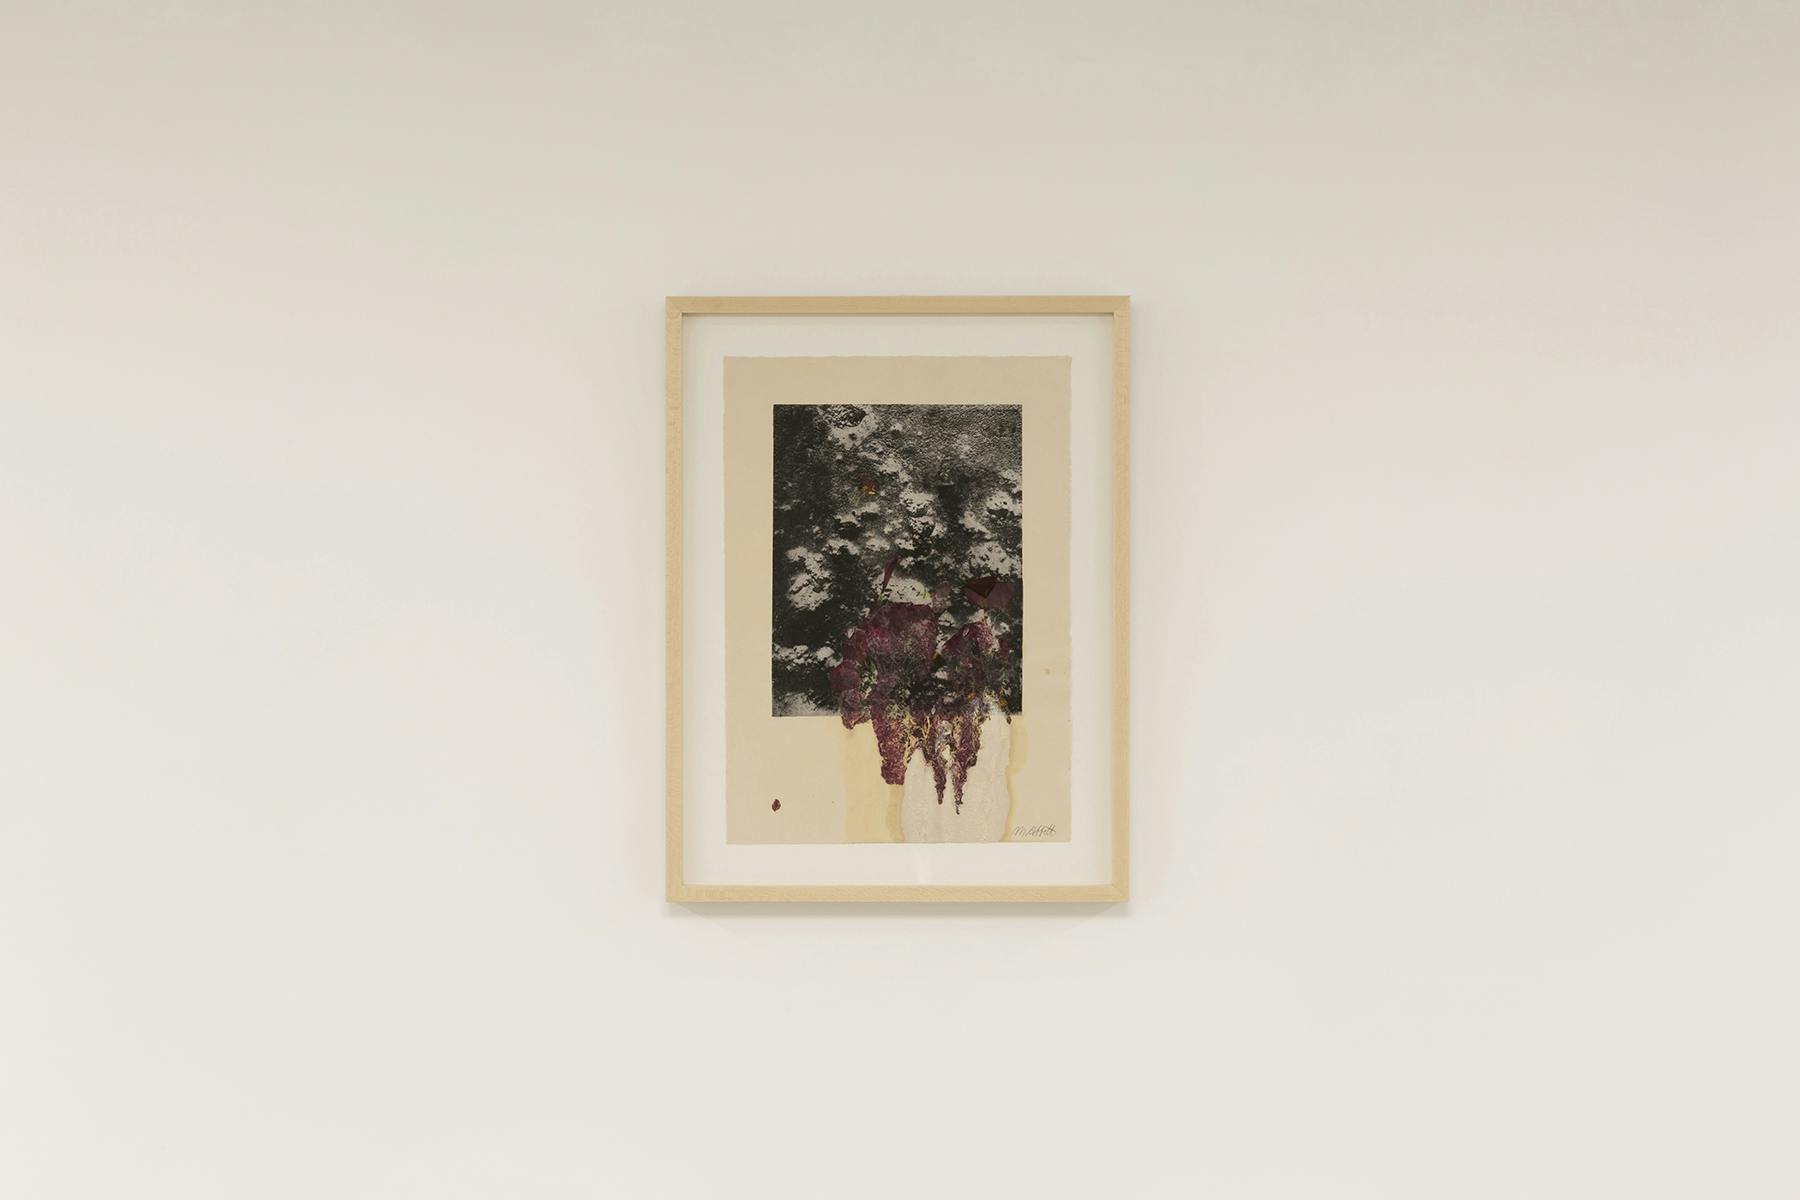 Flesh, Flowers, and Venus 1, 2021, monostampa, stampa alla gomma e fiori su carta, 45 x 34 cm